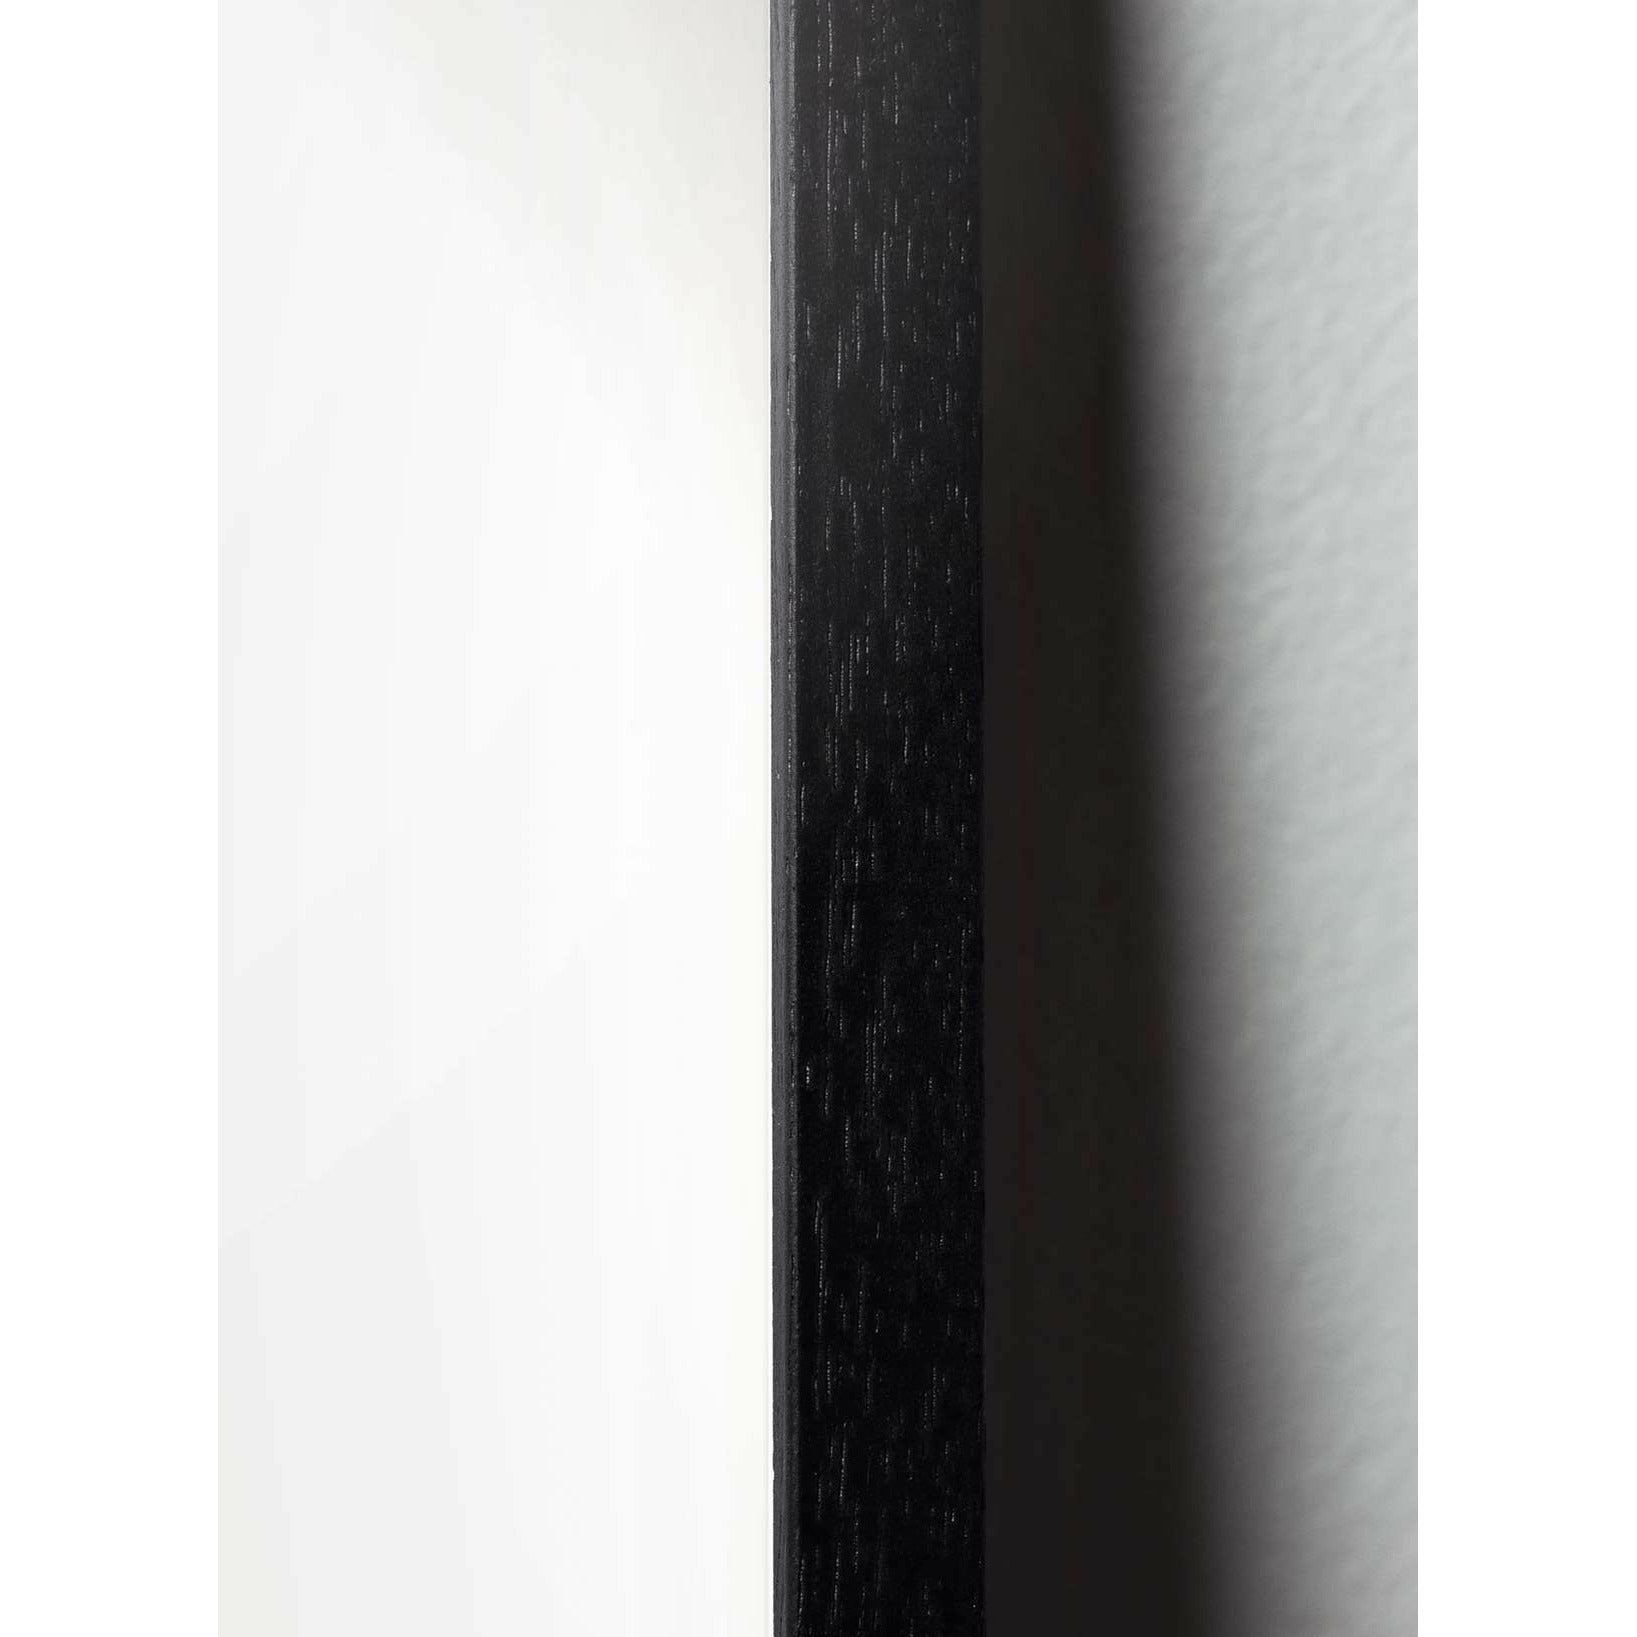 Brainchild Släpp klassisk affisch, ram i svart lackerat trä 30x40 cm, sandfärgad bakgrund